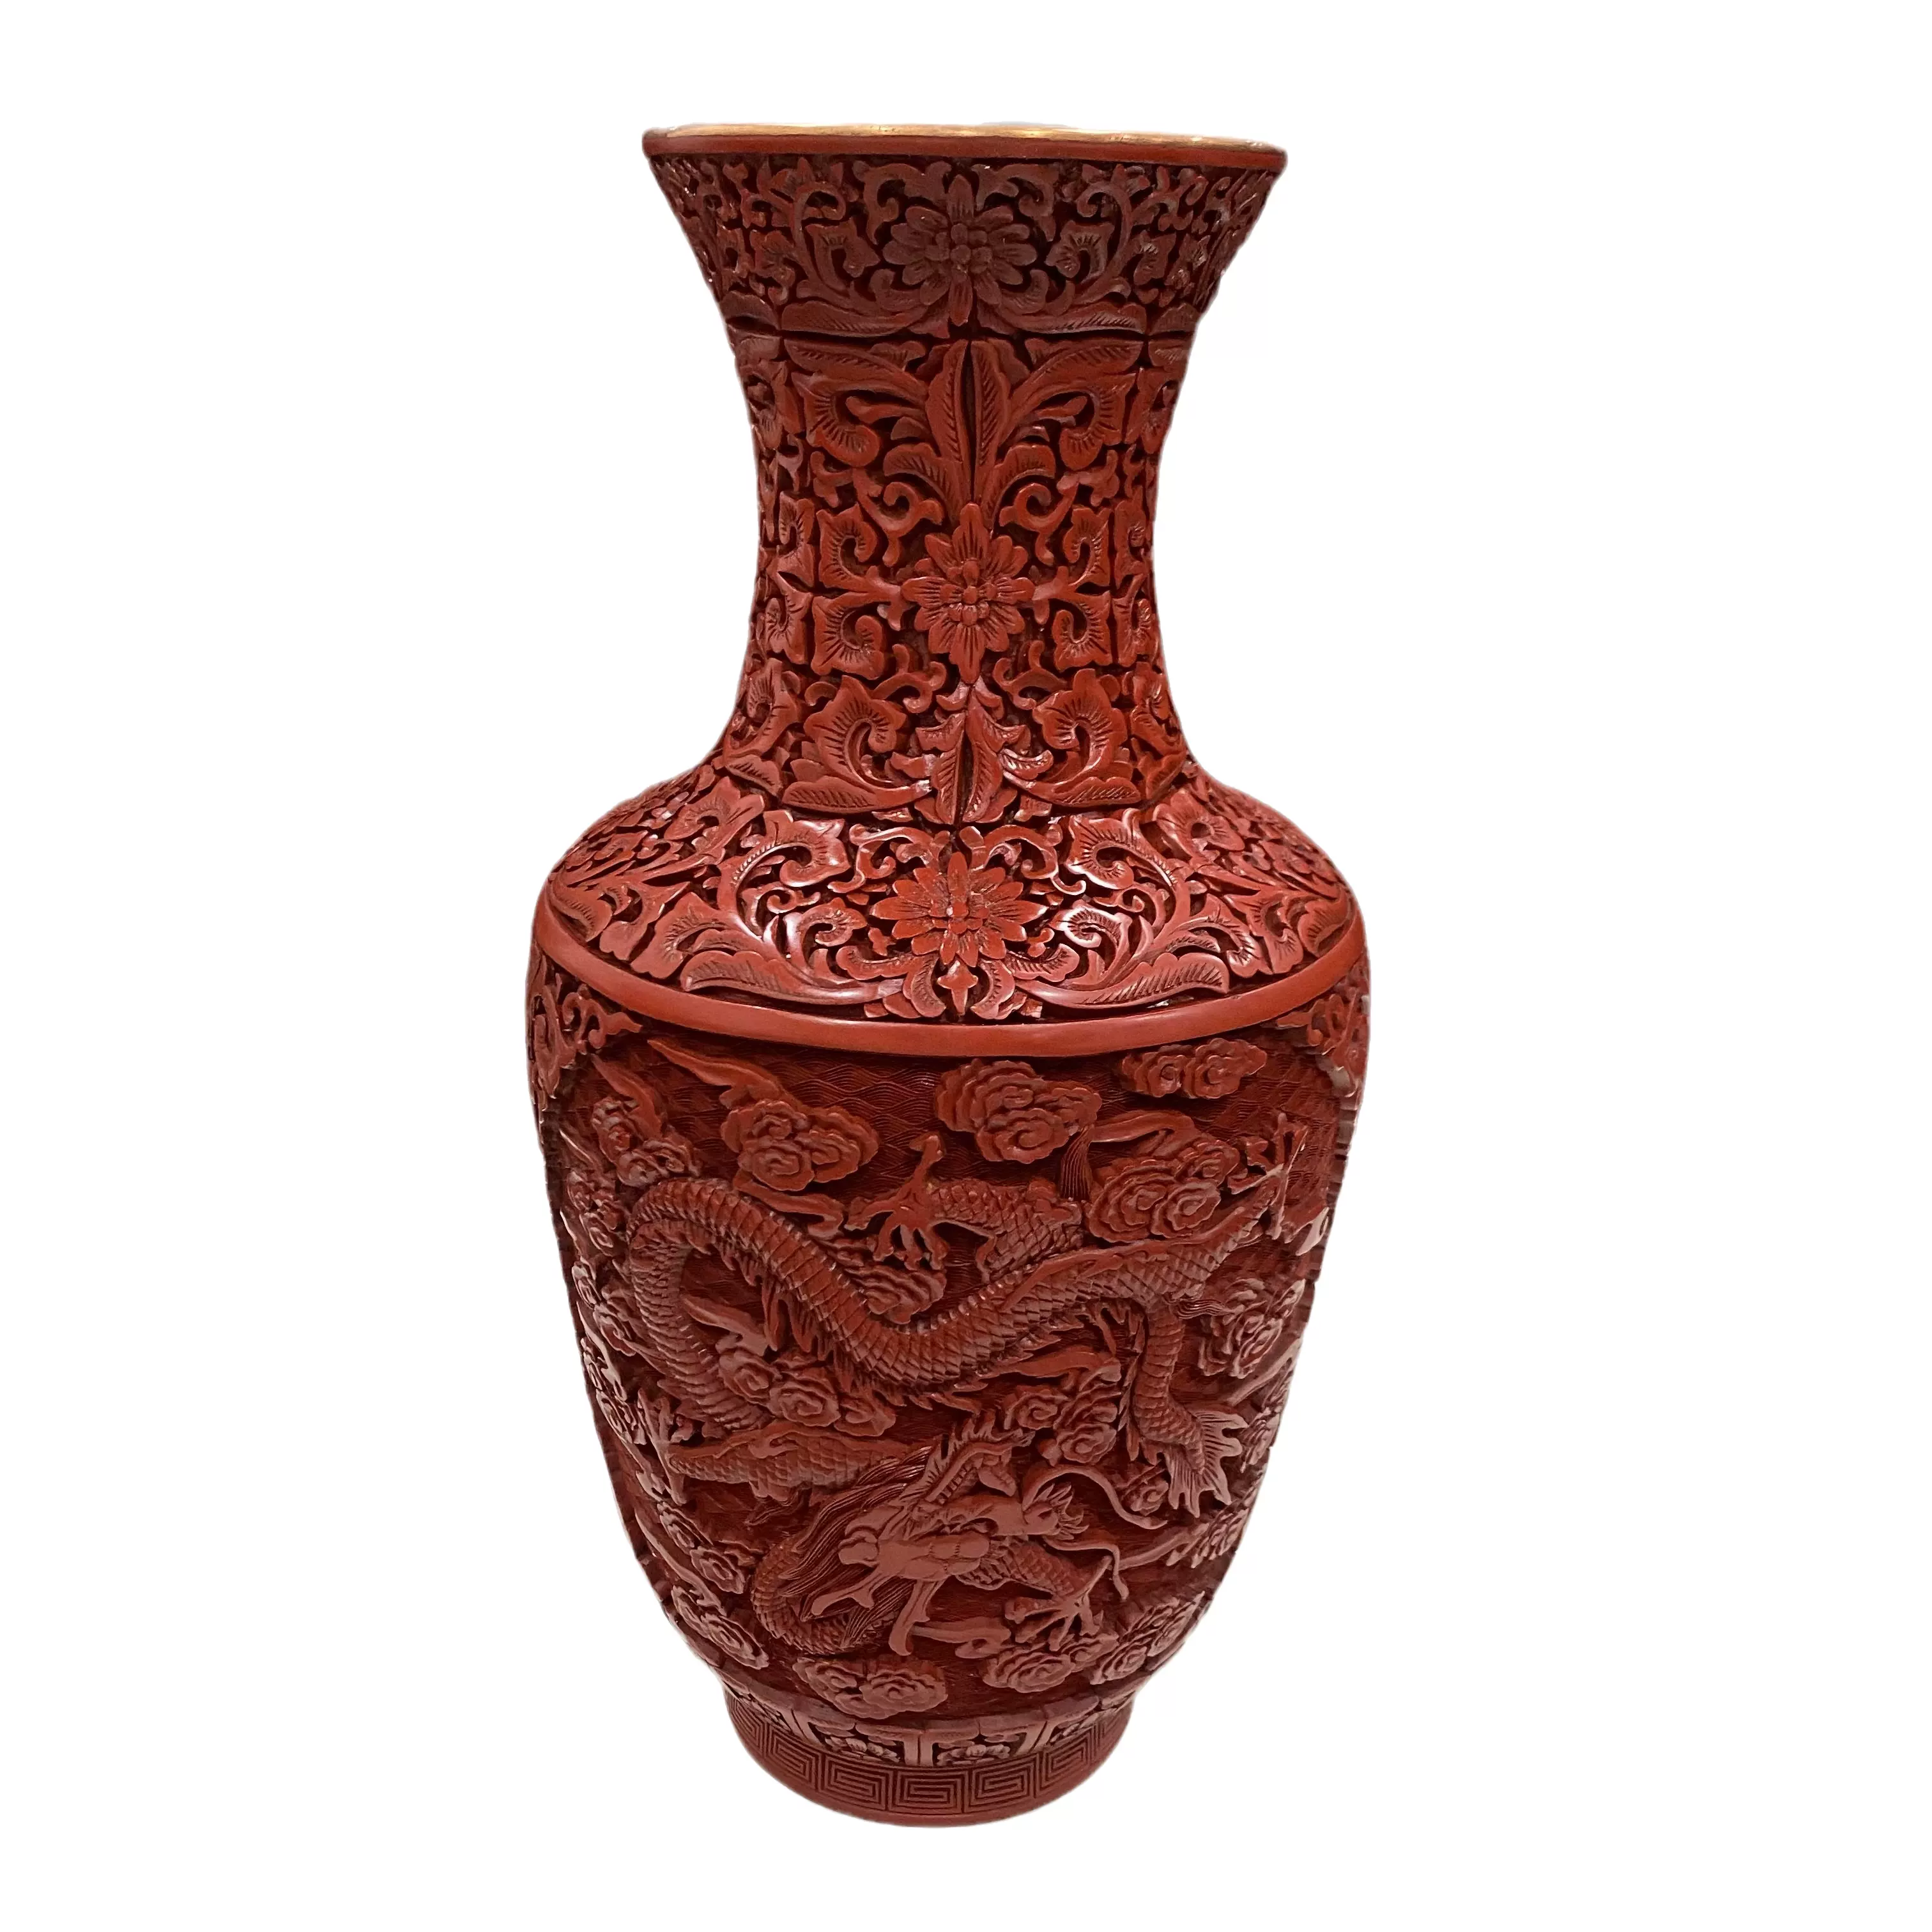 雕漆剔红漆器纯手工天然大漆雕刻铜胎祥云龙花瓶15寸收藏品-Taobao